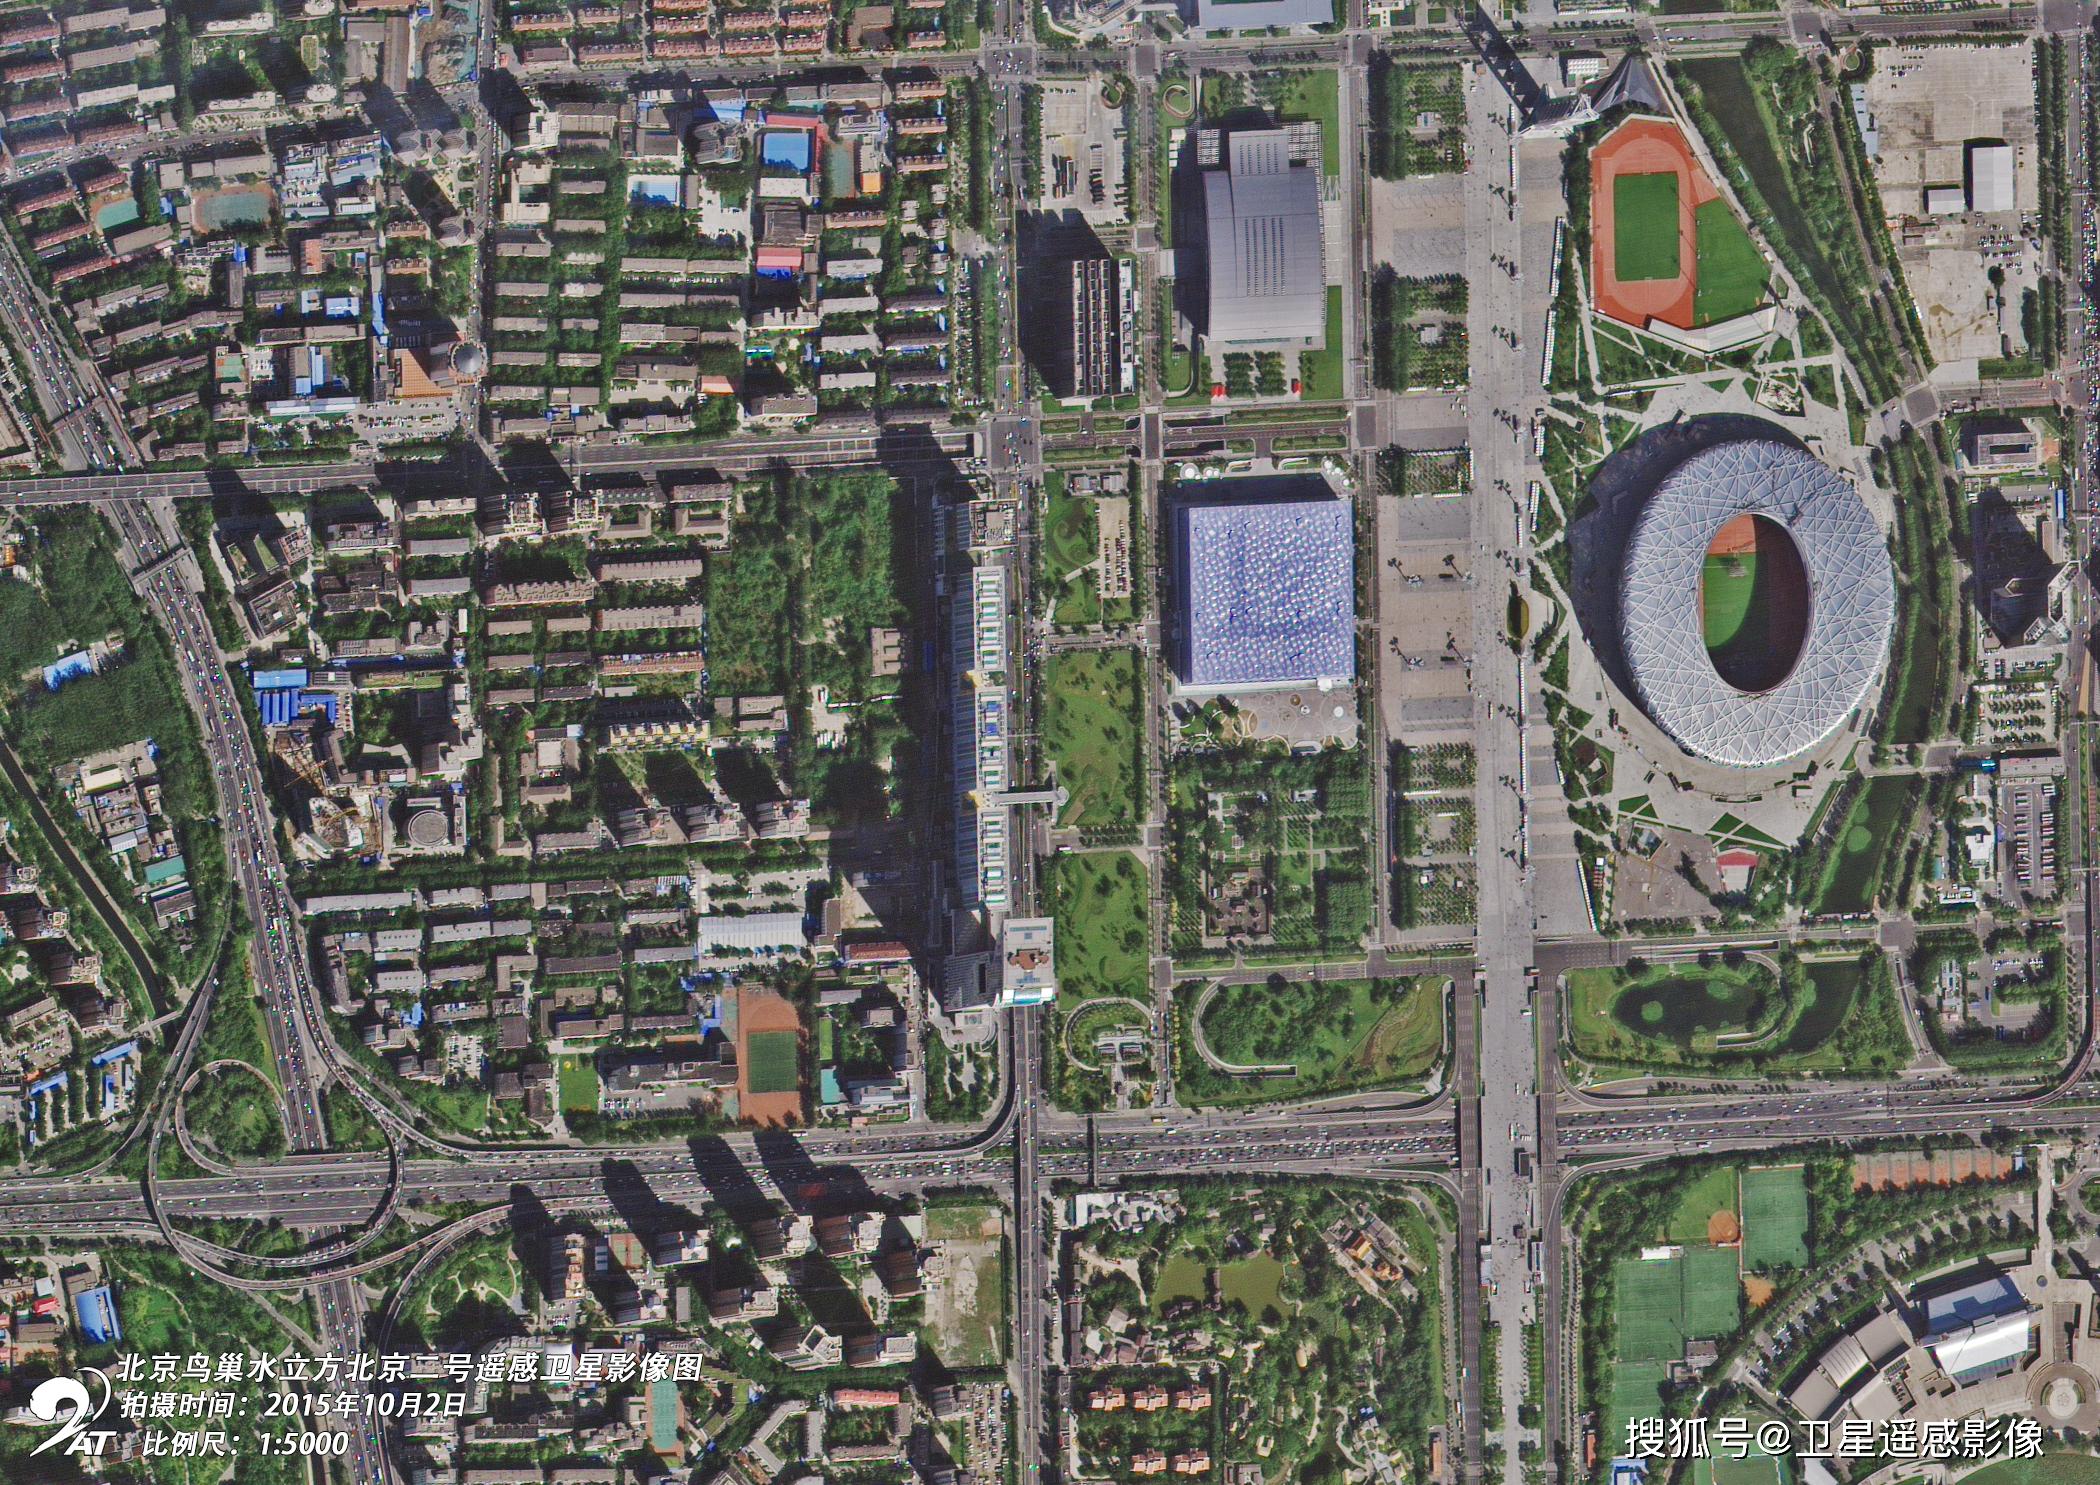 北京二号卫星遥感影像参数从哪里获取